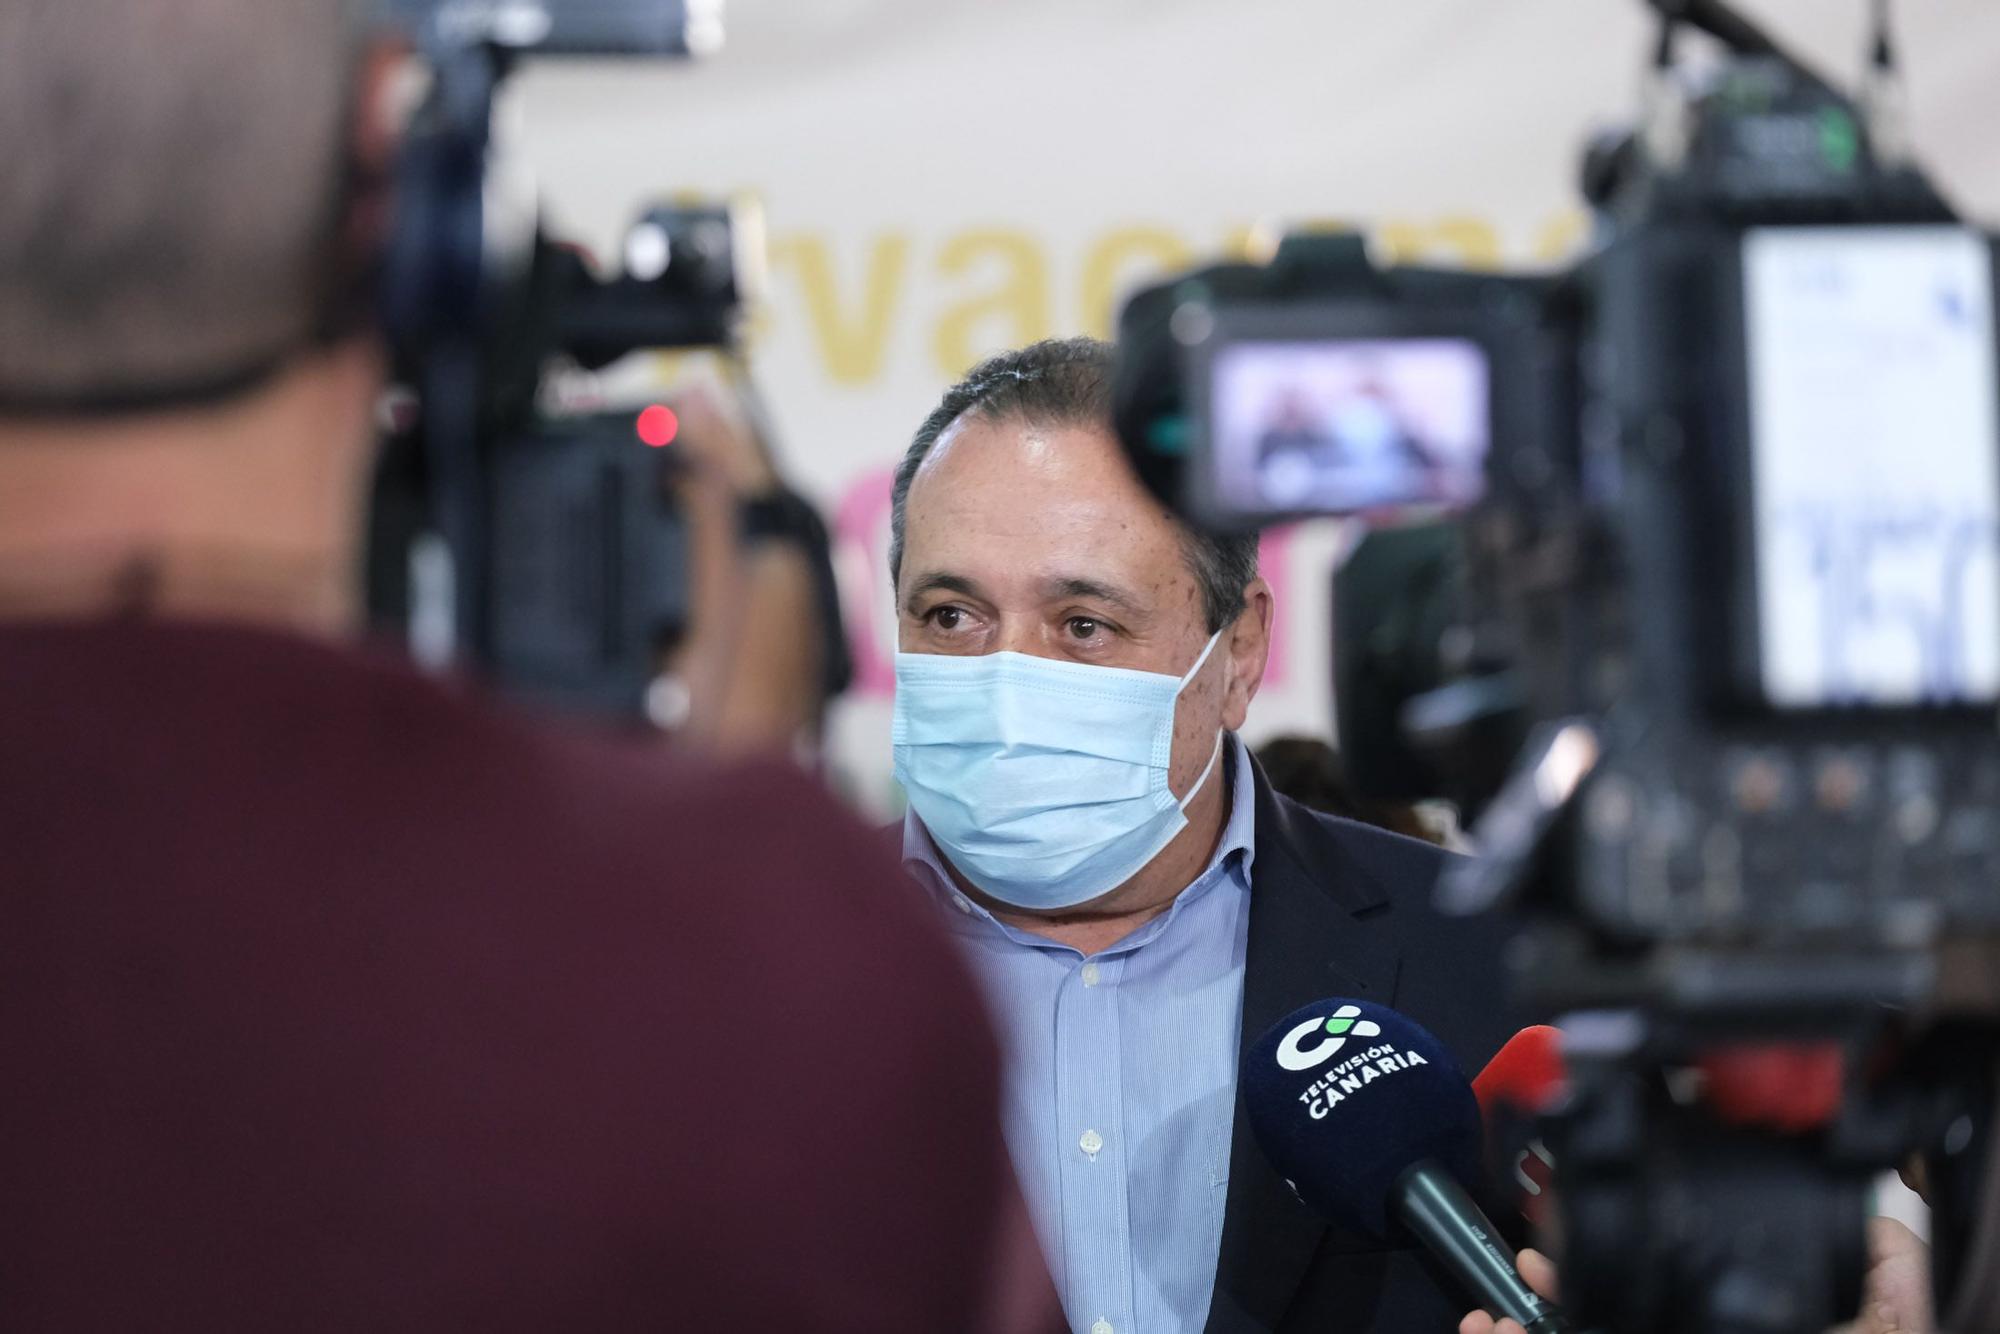 Ángel Víctor Torres y Blas Trujillo visitan el punto de vacunación de Infecar